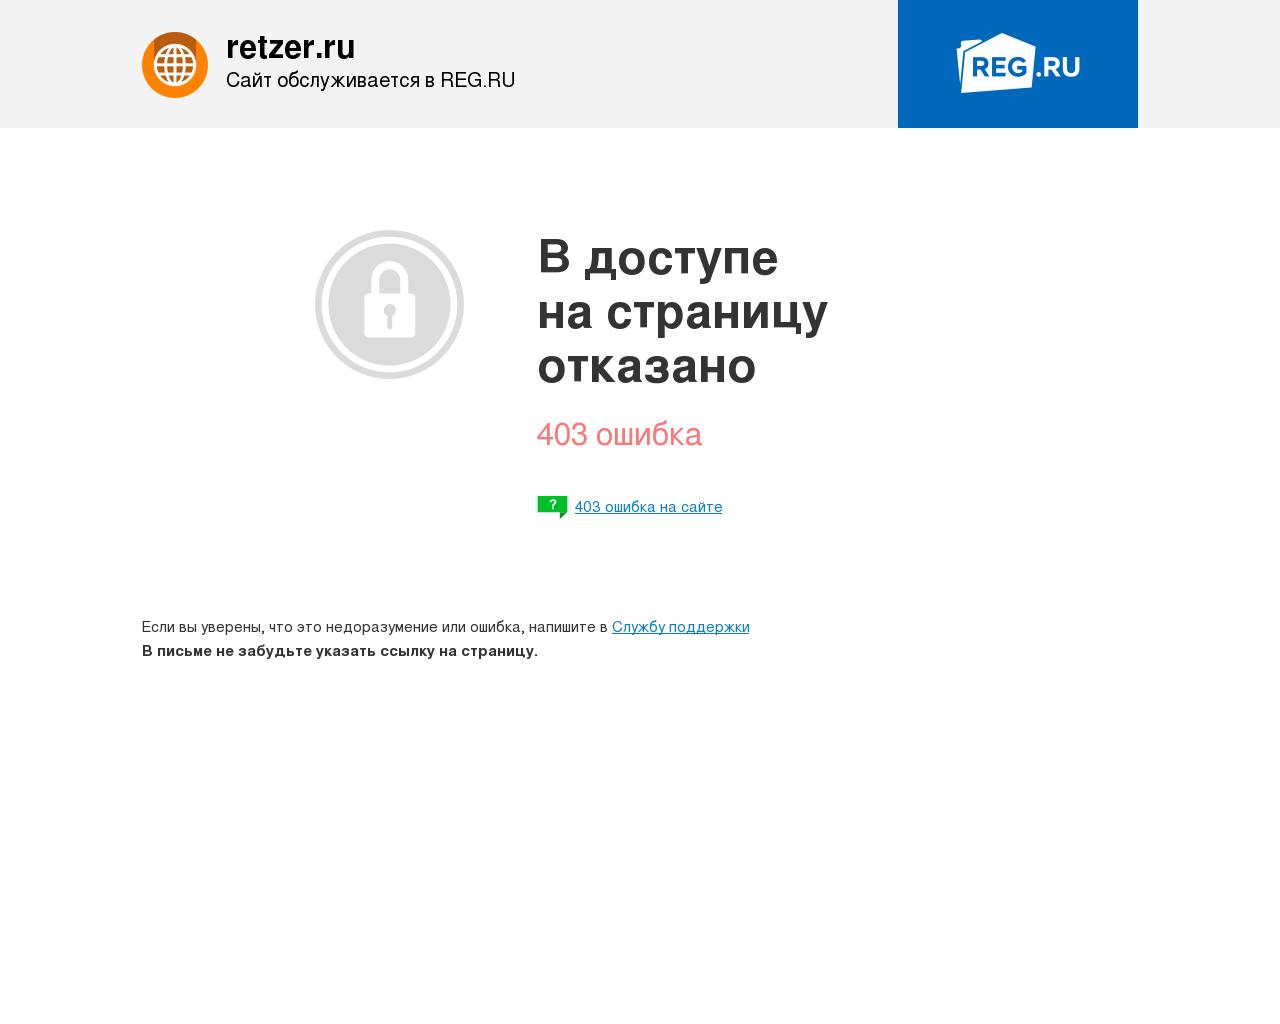 Изображение сайта retzer.ru в разрешении 1280x1024